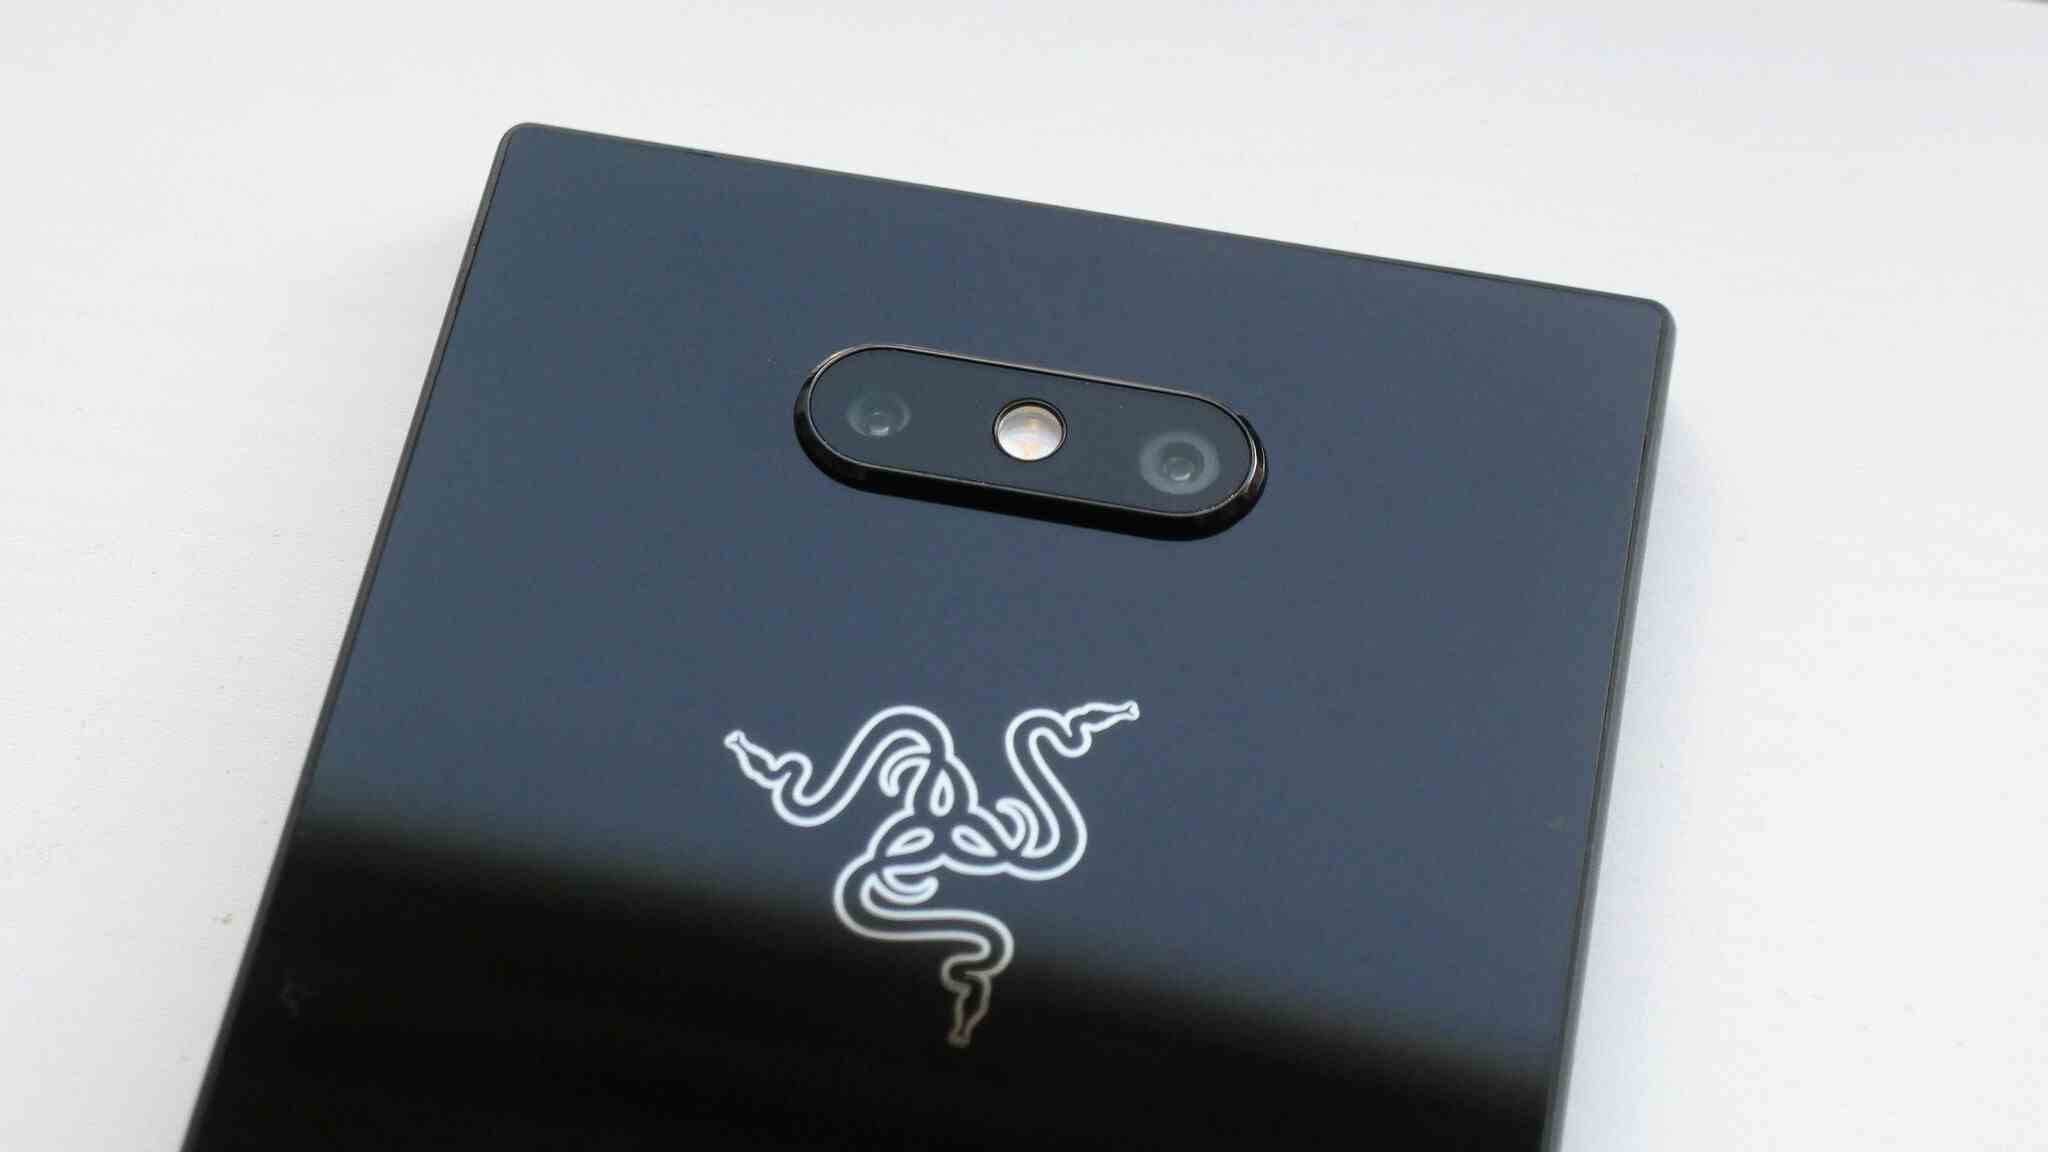 Şirket logosunu ve kamerayı gösteren Razer Phone 2 arka yüzü